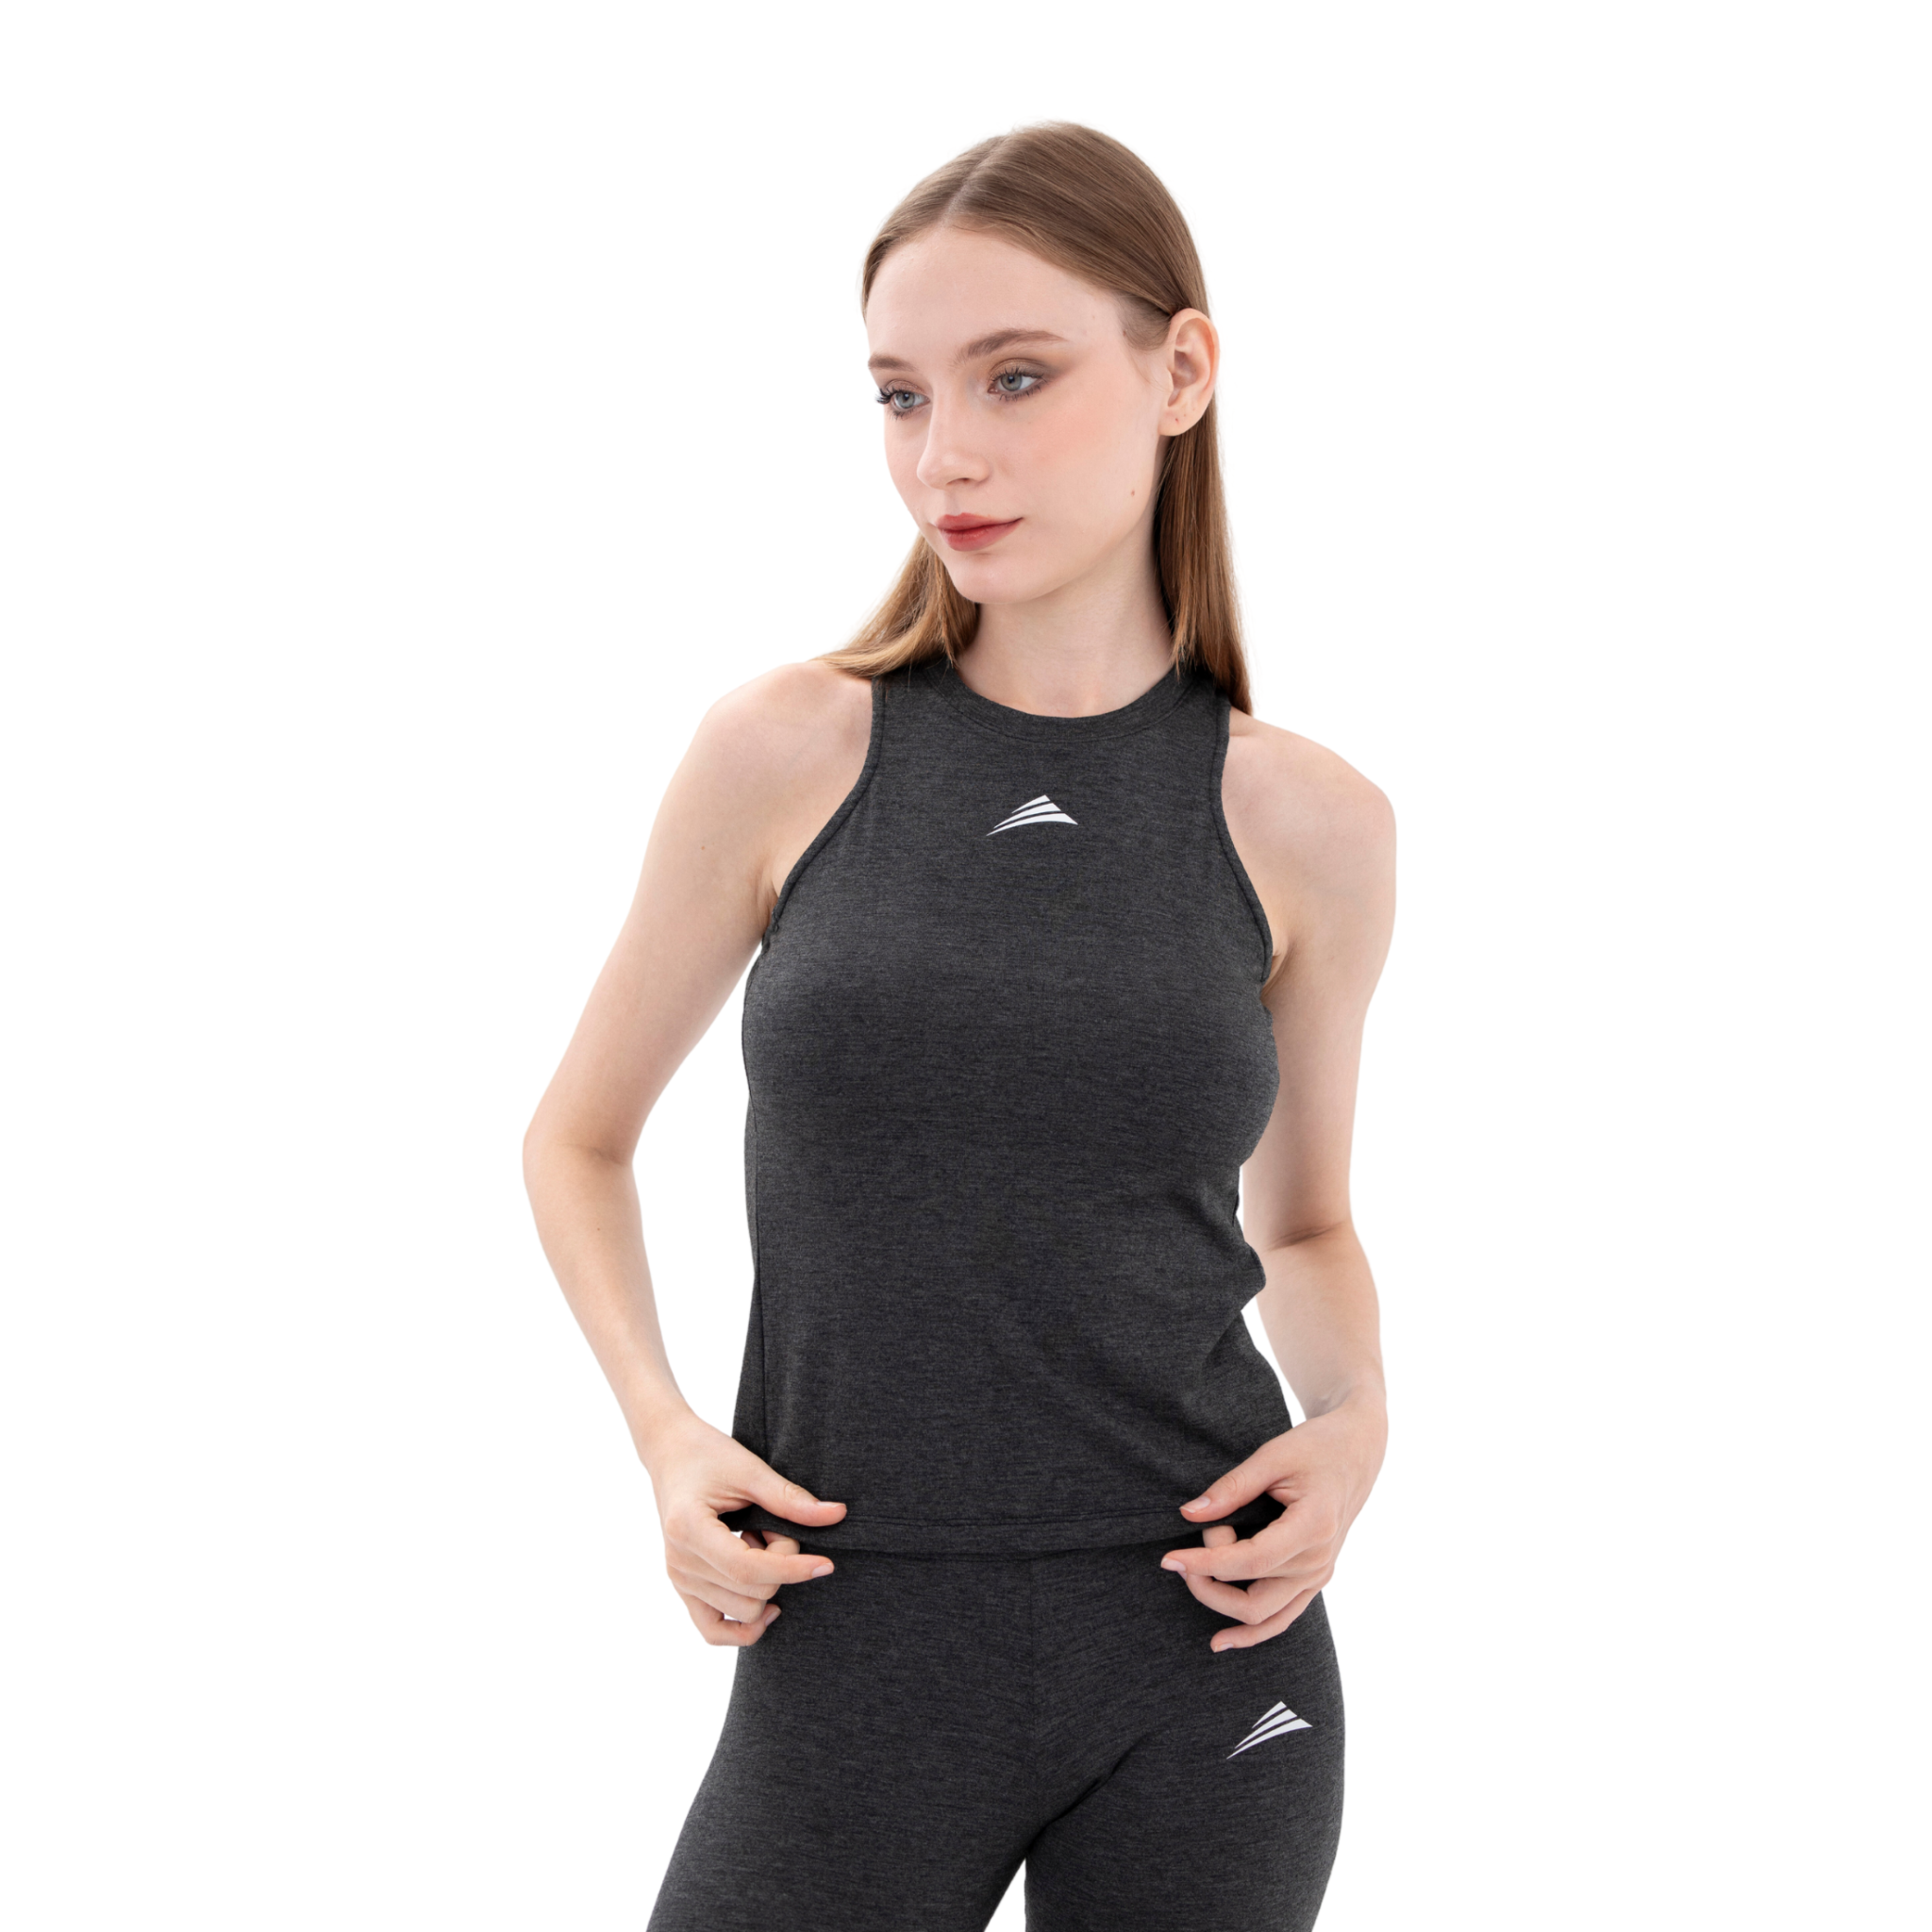  Bộ đồ tập Yoga, Gym, Fitness co giãn 4 chiều màu xám đen cao cấp  ALLPURE 